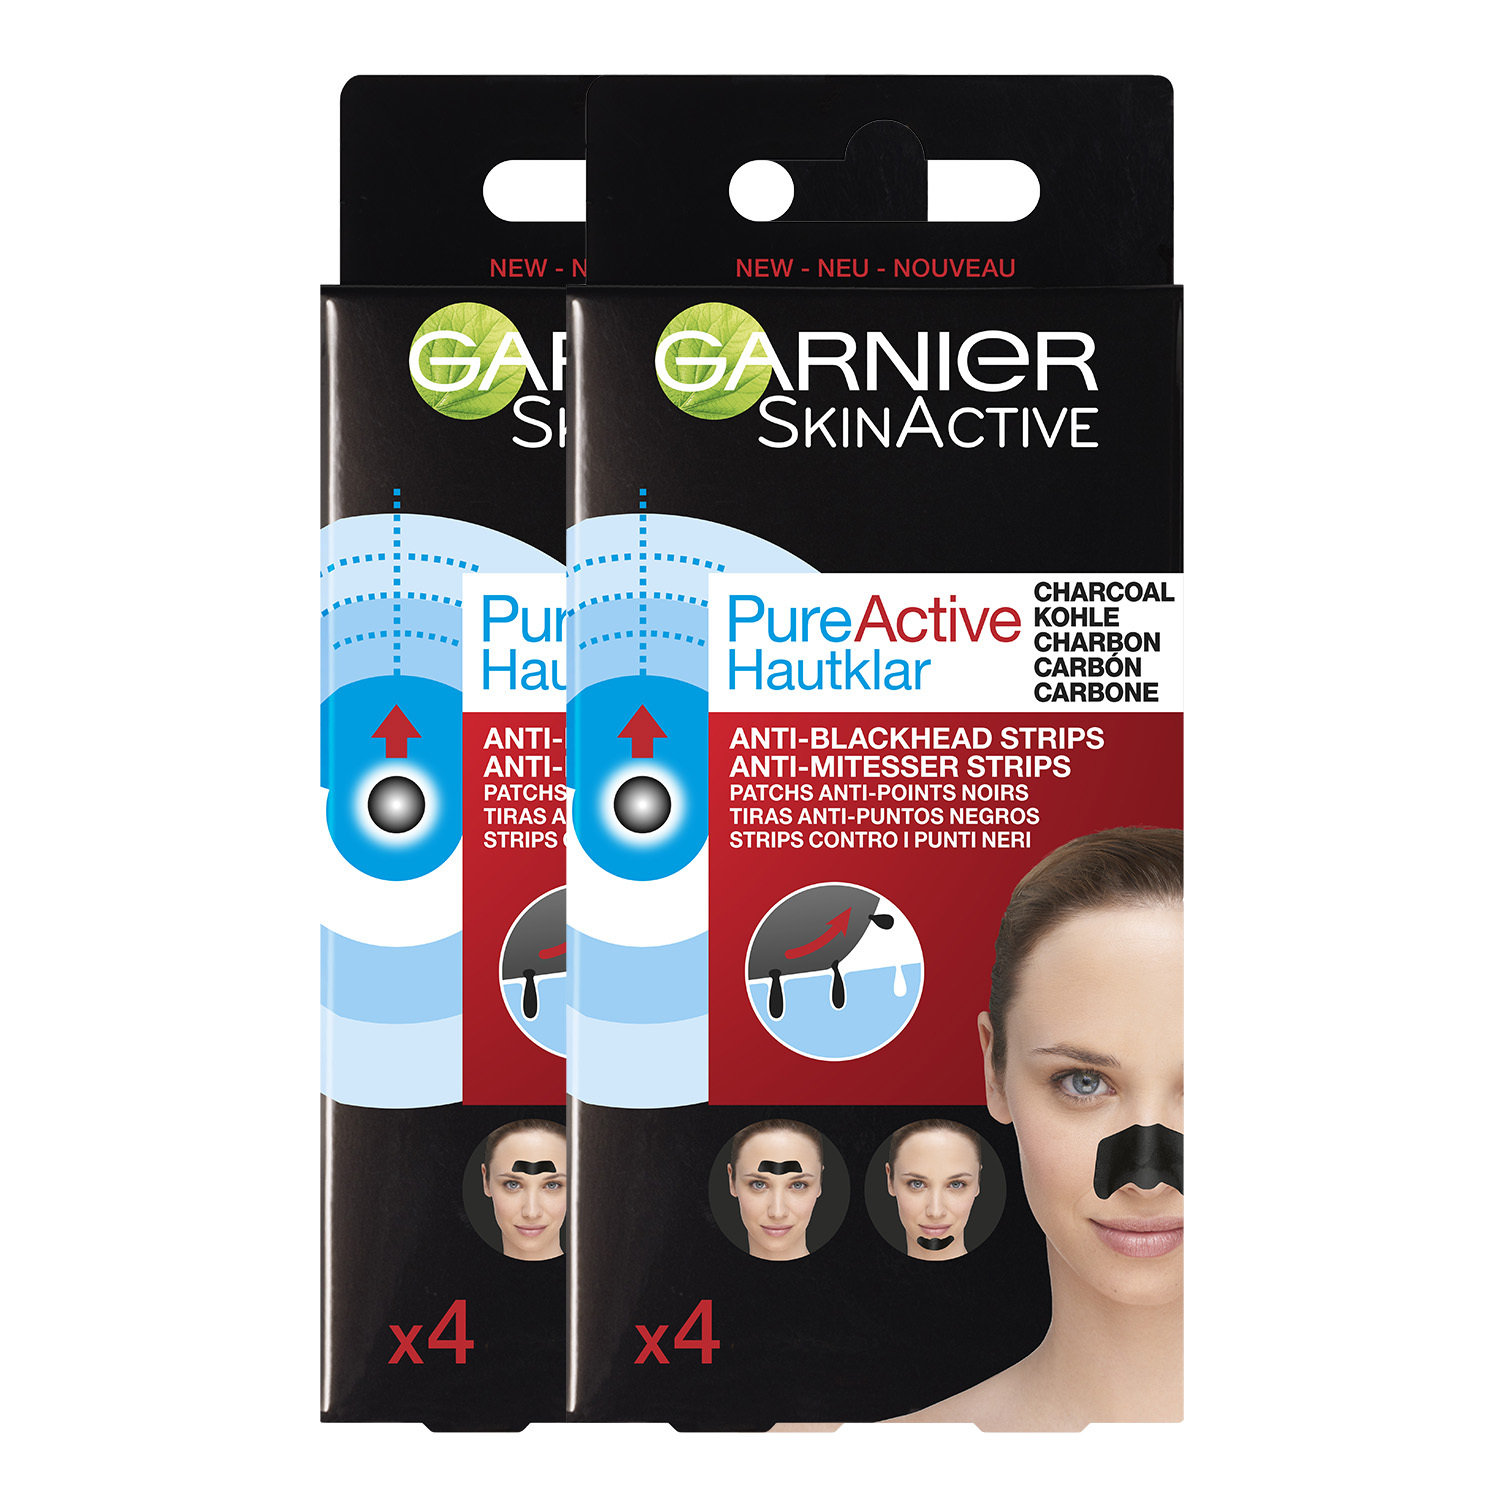 Garnier Skinactive Face SkinActive PureActive Nose strips Charcoal - 2 x 4 Stuks - Tegen mee-eters, verstopte poriën en overtollig talg - Voordeelverpakking